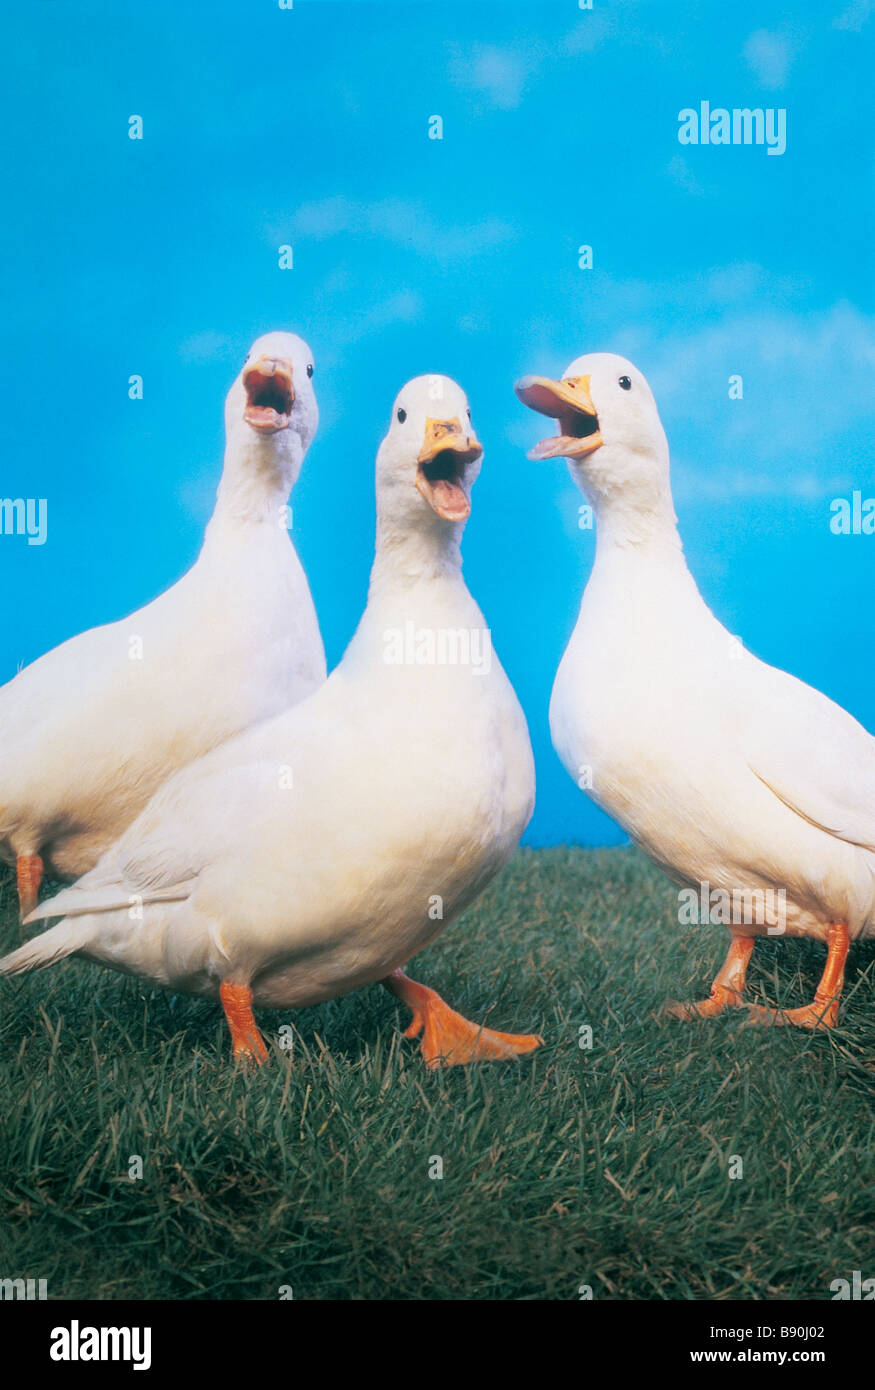 FL3116, KITCHIN/HURST; Drei weiße Enten Stockfoto